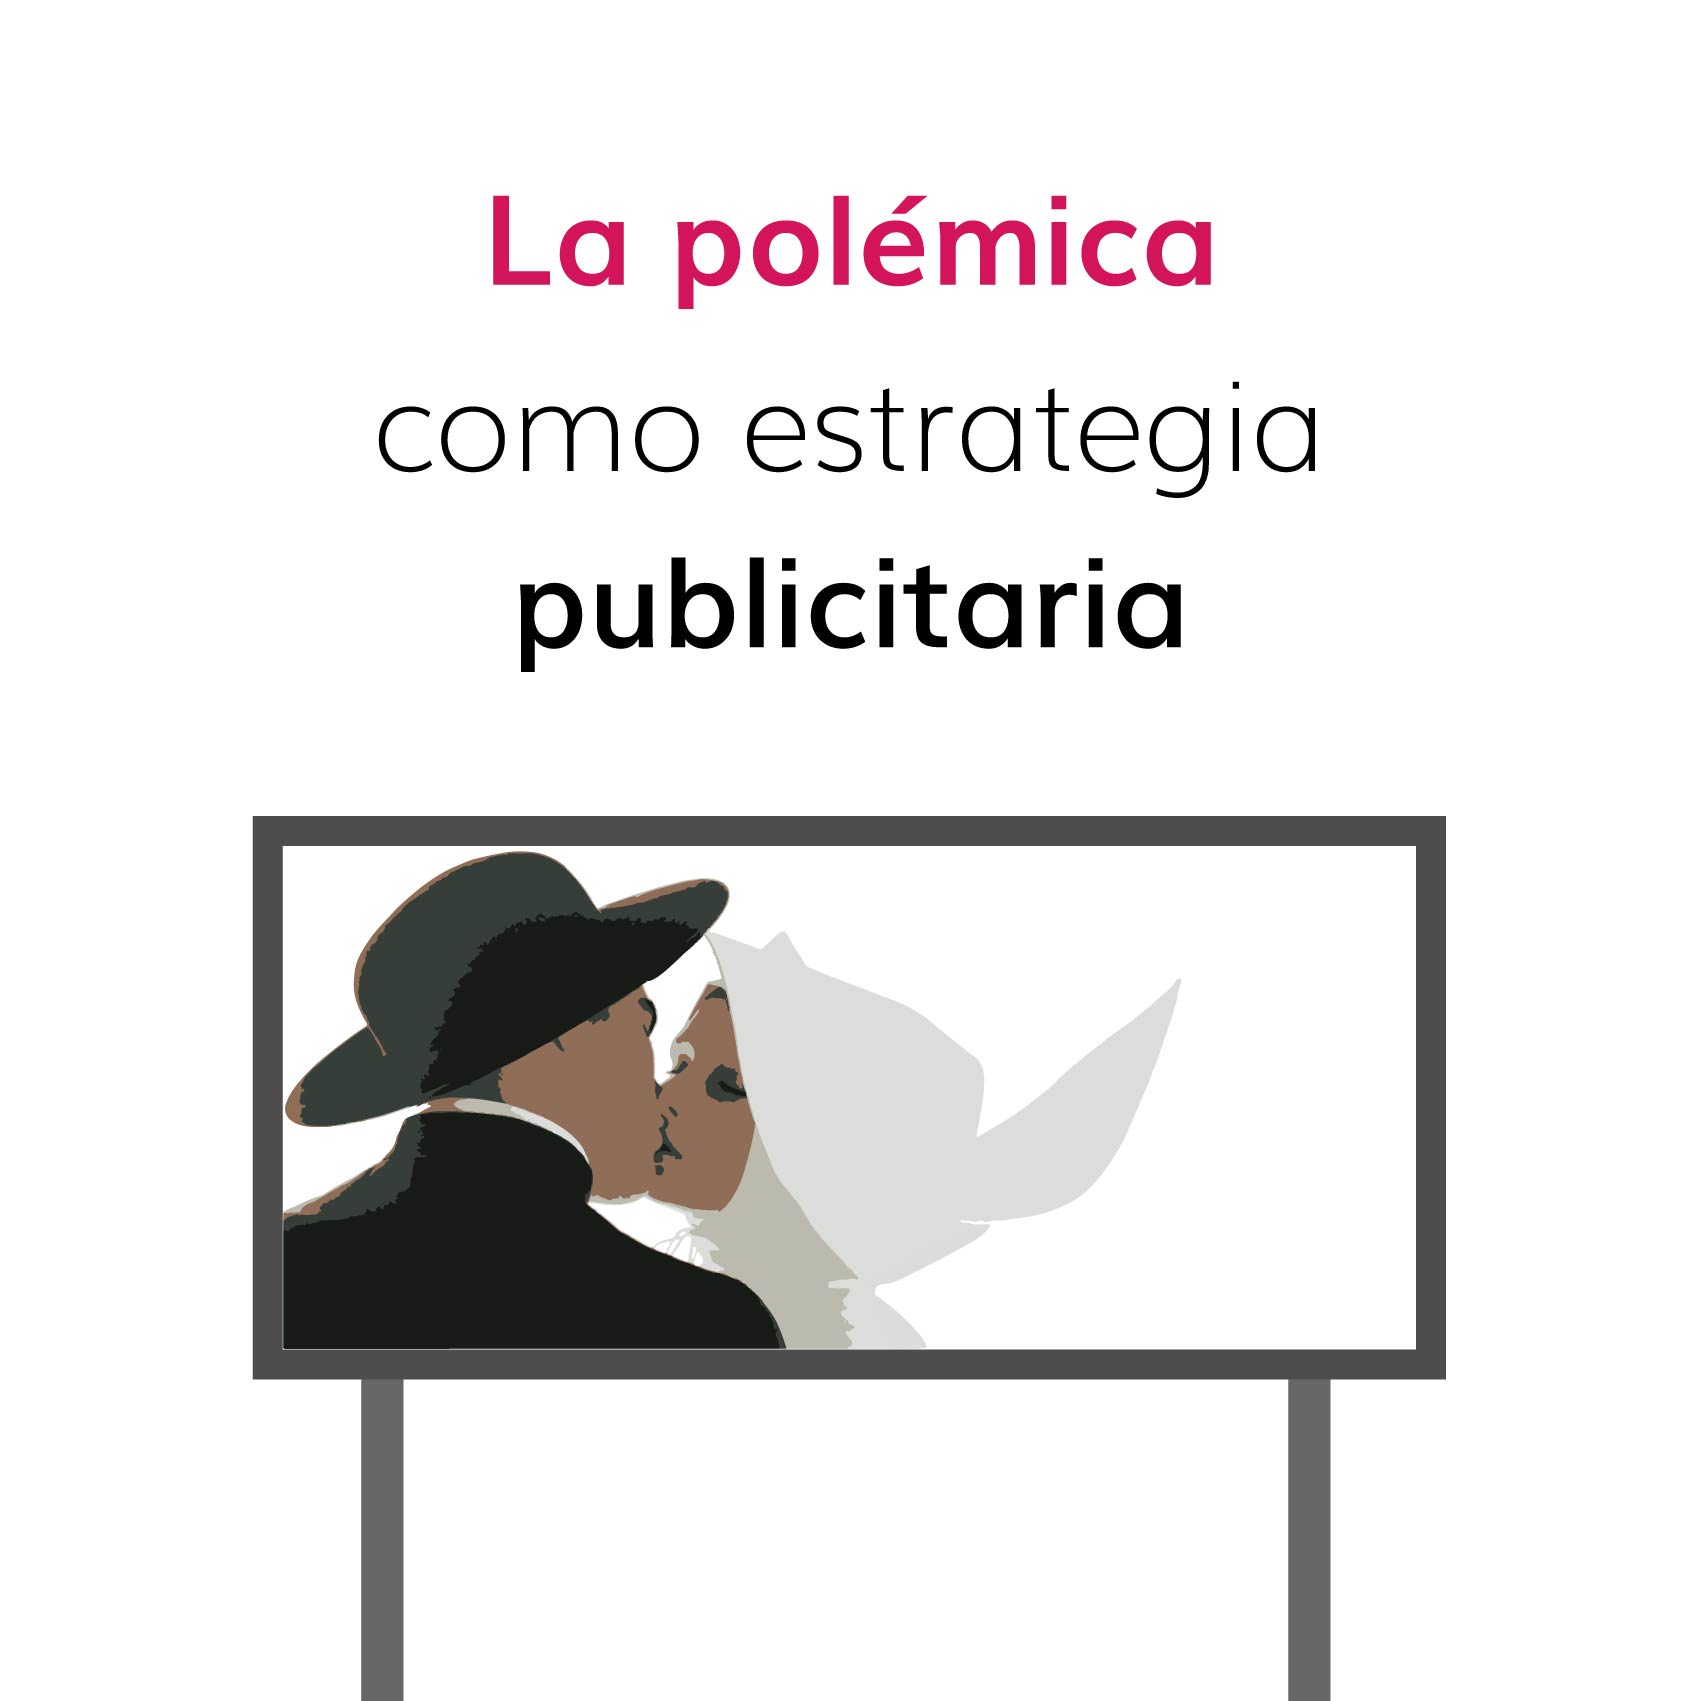 la-polemica-como-estrategia-publicitaria_Polemica como estrategia